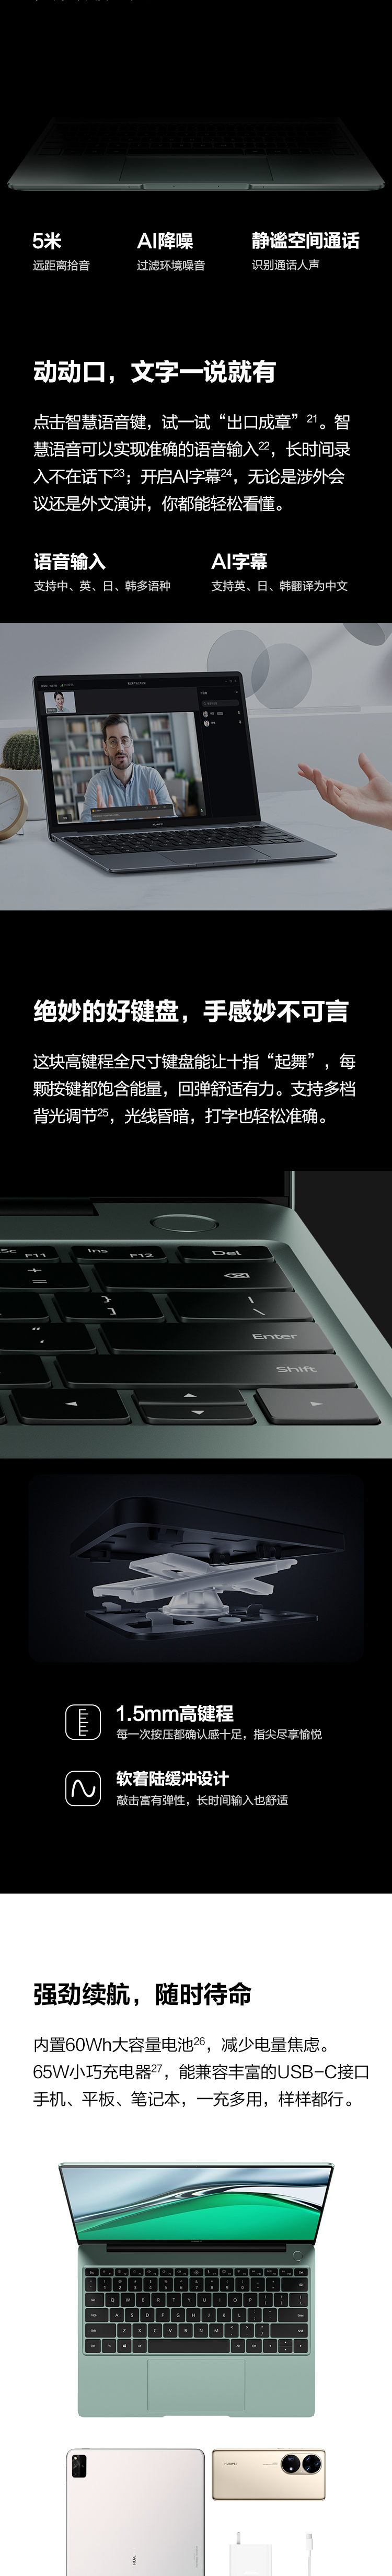 华为笔记本电脑MateBook 13s 2021 11代酷睿i5-11300H 16G 512G锐炬显卡/13.4英寸全面触控屏/轻薄办公本